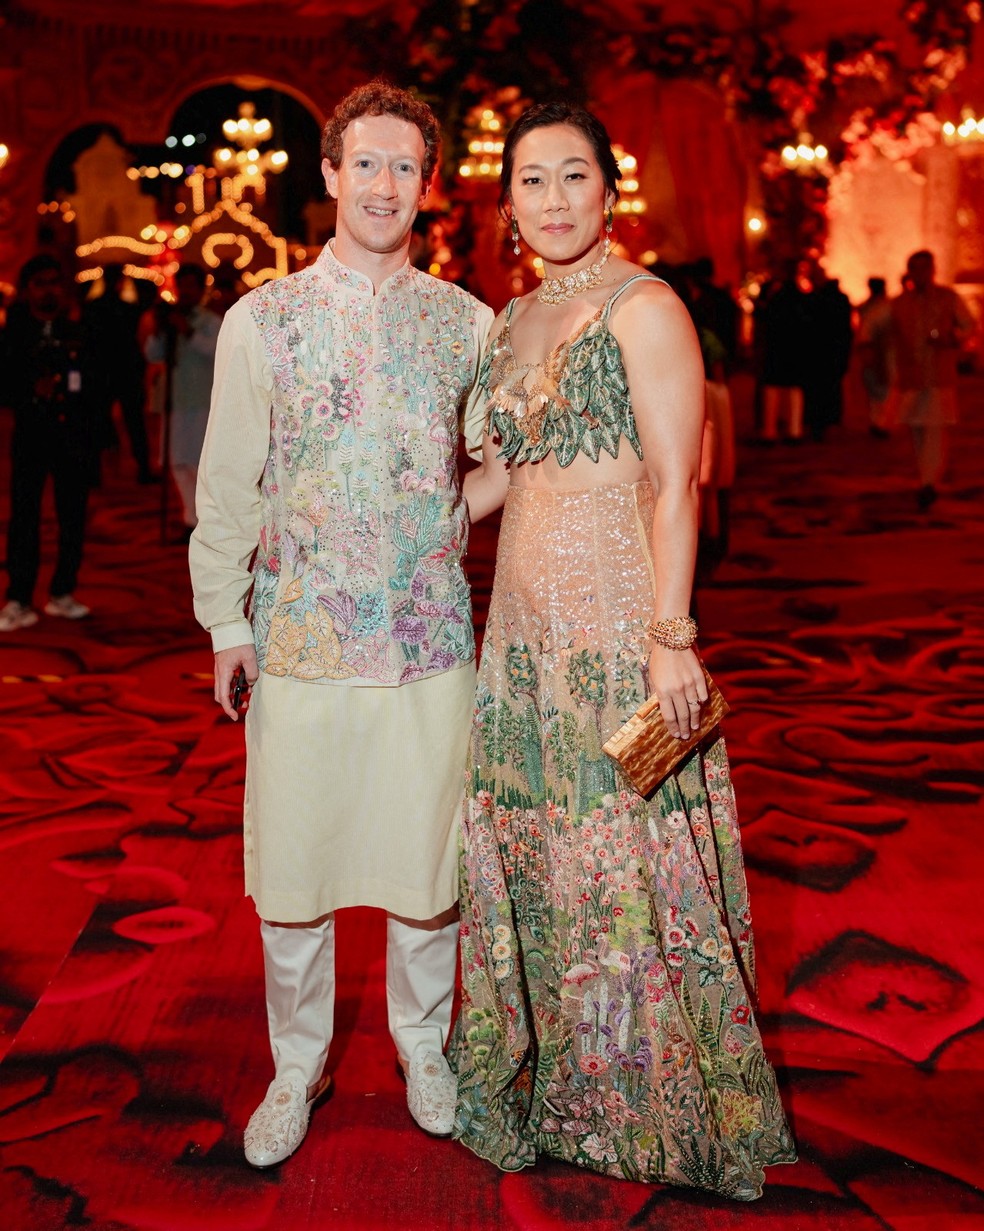 Mark Zuckerberg e sua esposa, Priscilla Chan, posam durante as celebrações pré-casamento de Anant Ambani e Radhika Merchan — Foto: Reliance Industries/Handout via REUTERS